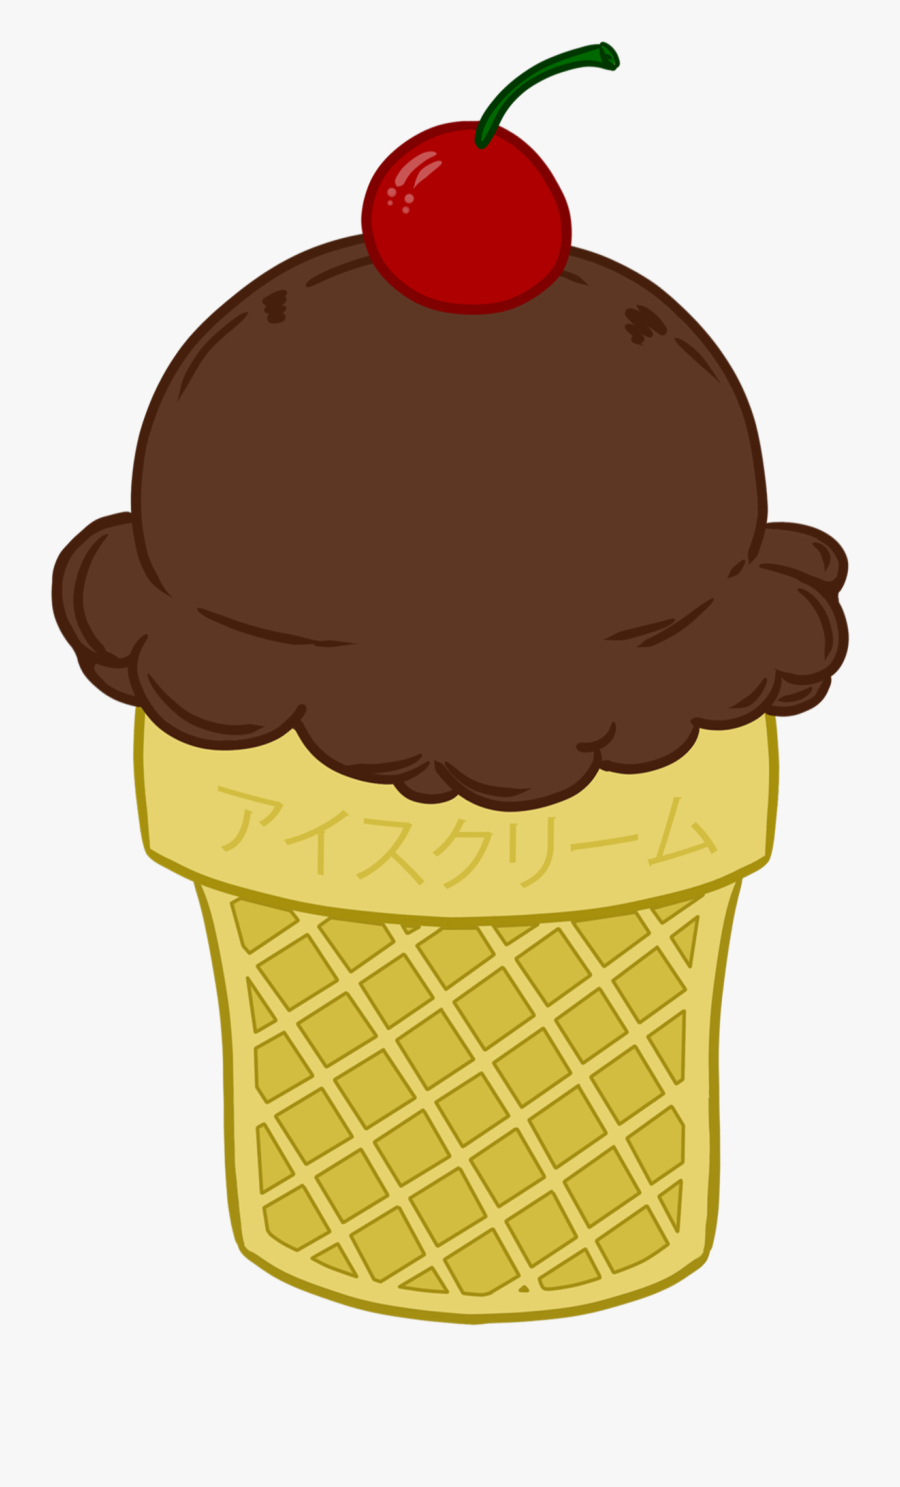 Transparent Vanilla Ice Cream Cone Clipart - Cotton Candy Ice Cream Clipart, Transparent Clipart